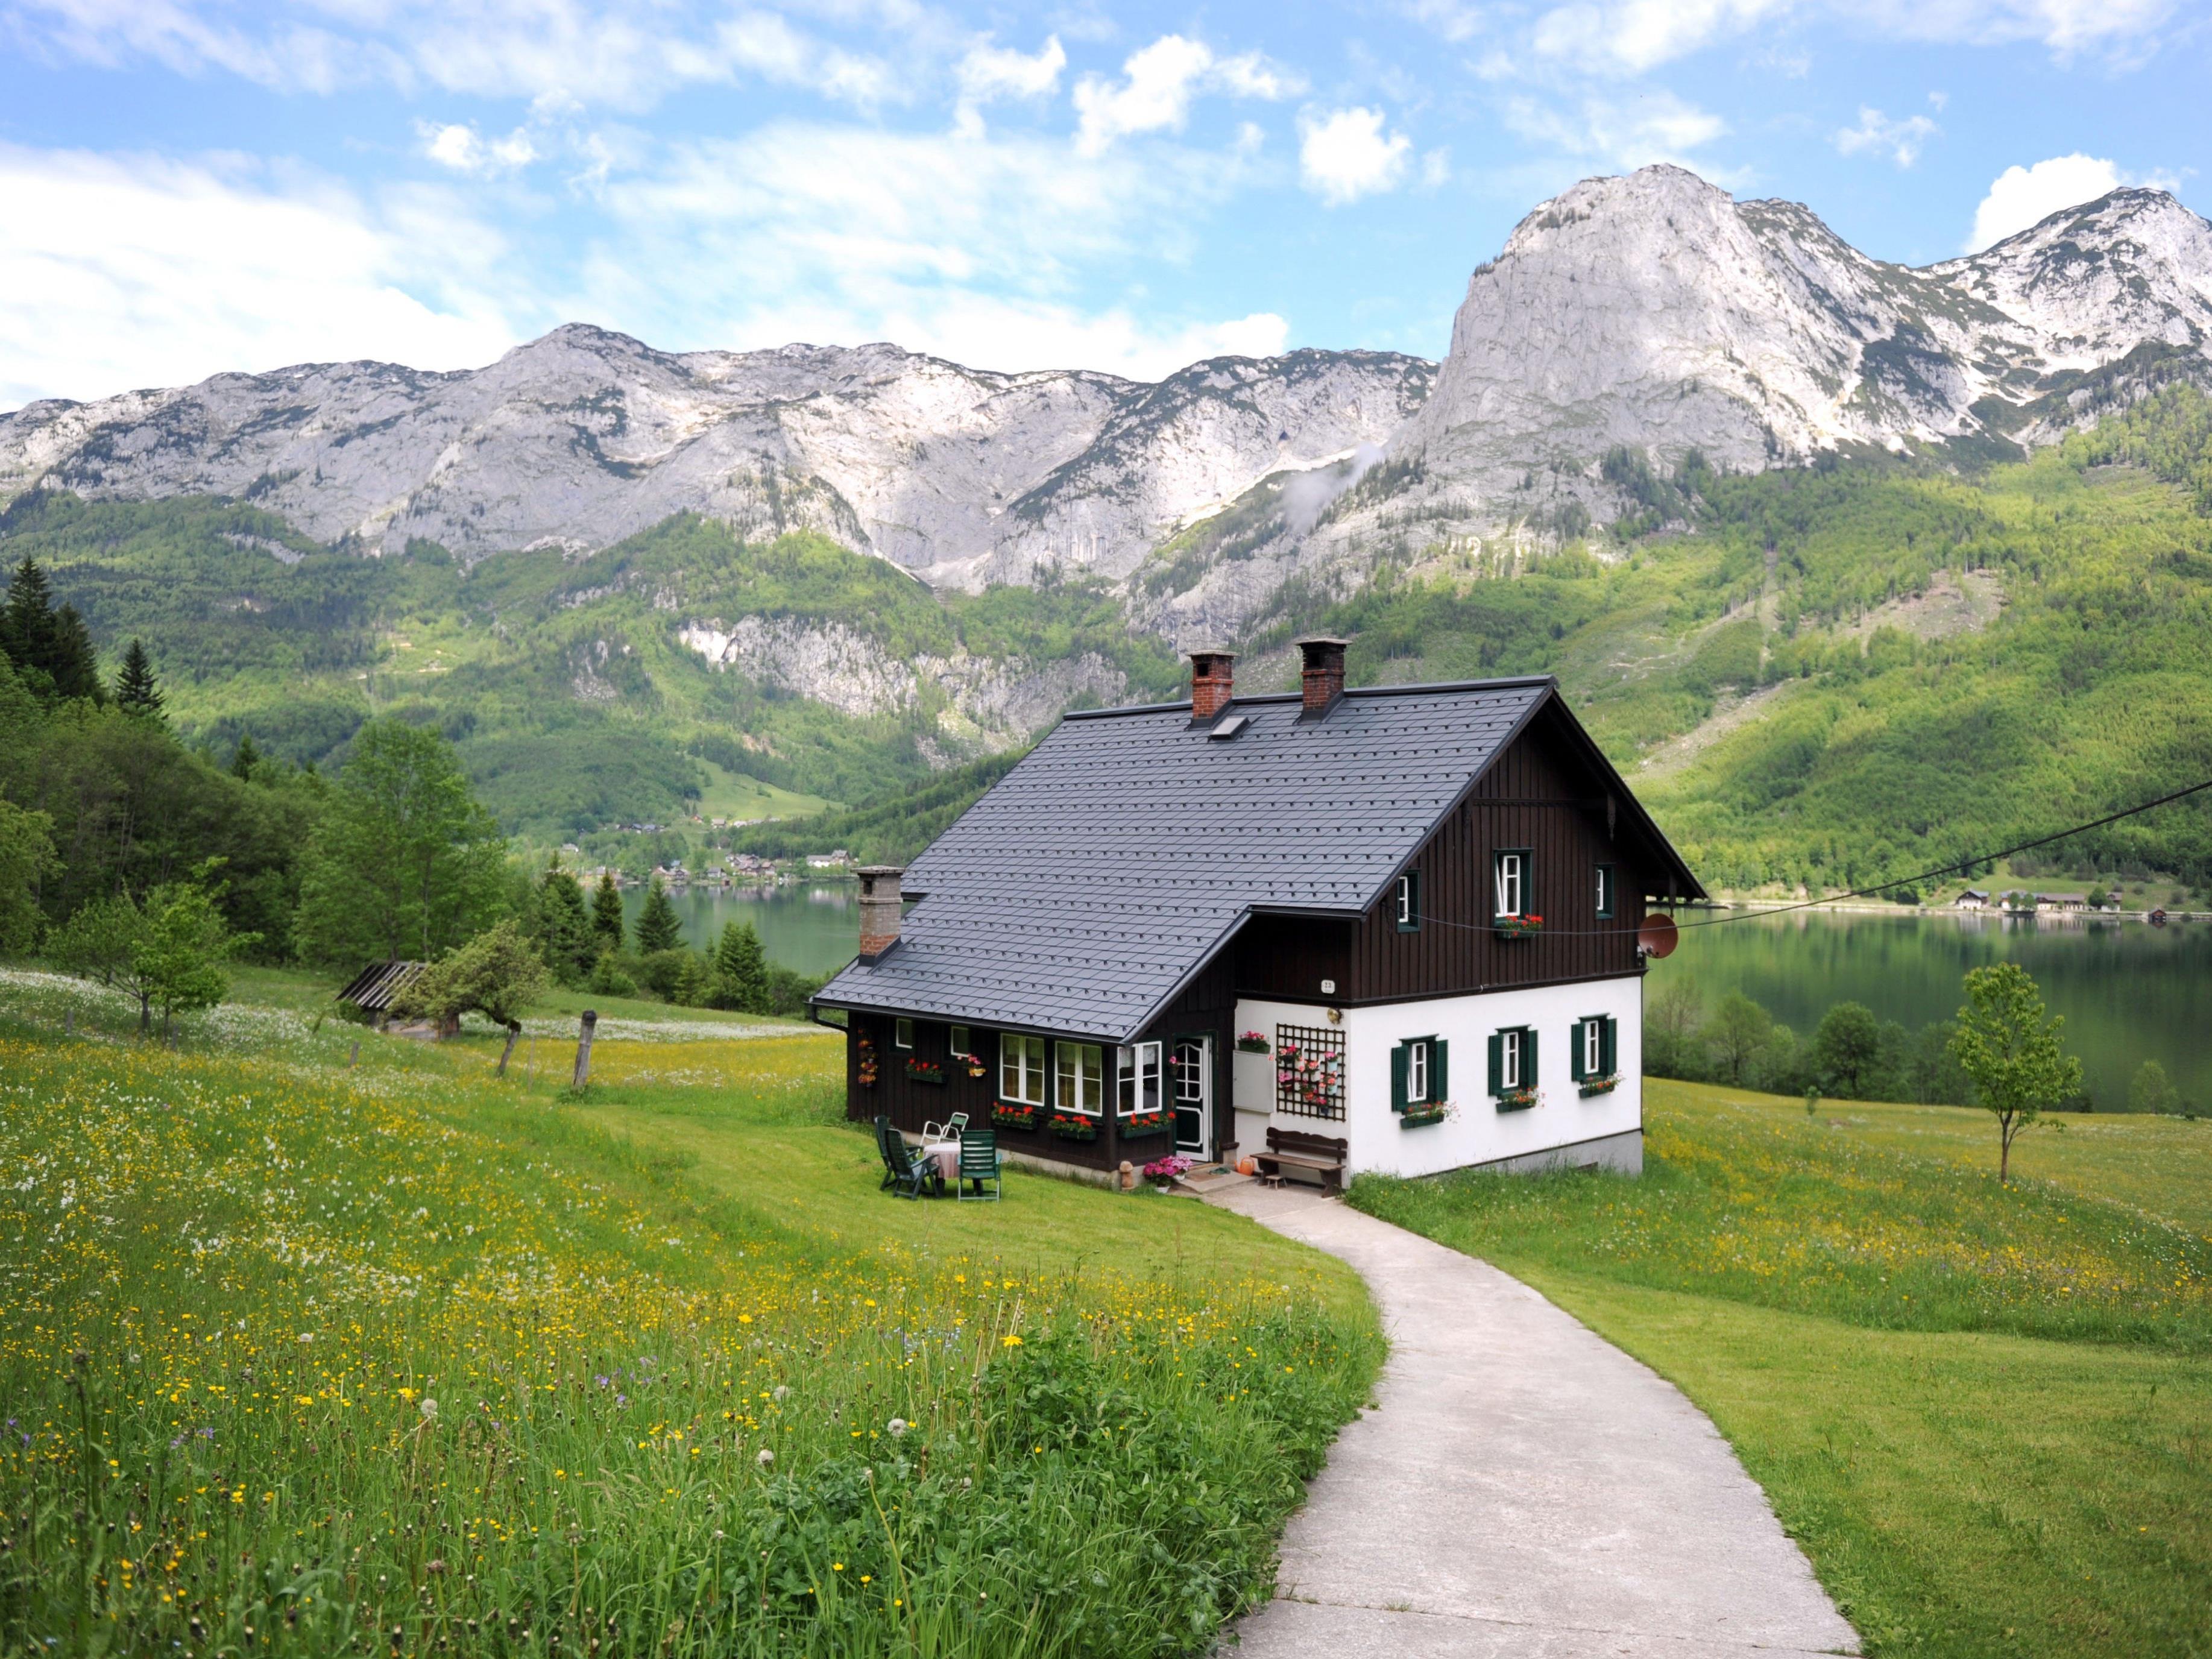 Urlaub in Österreich steht bei der heimischen Politik hoch im Kurs